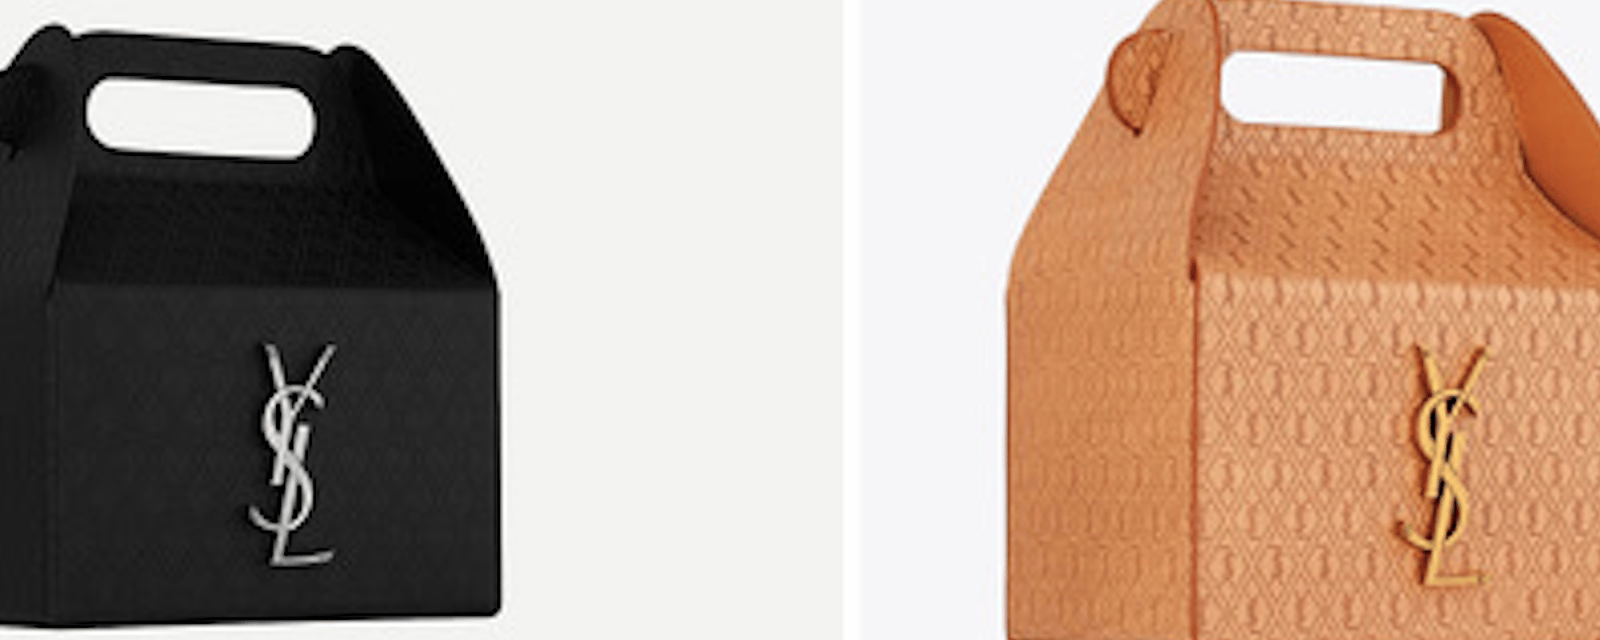 Un sac à main Yves Saint Laurent inspiré des Joyeux Festins de Mc Do!